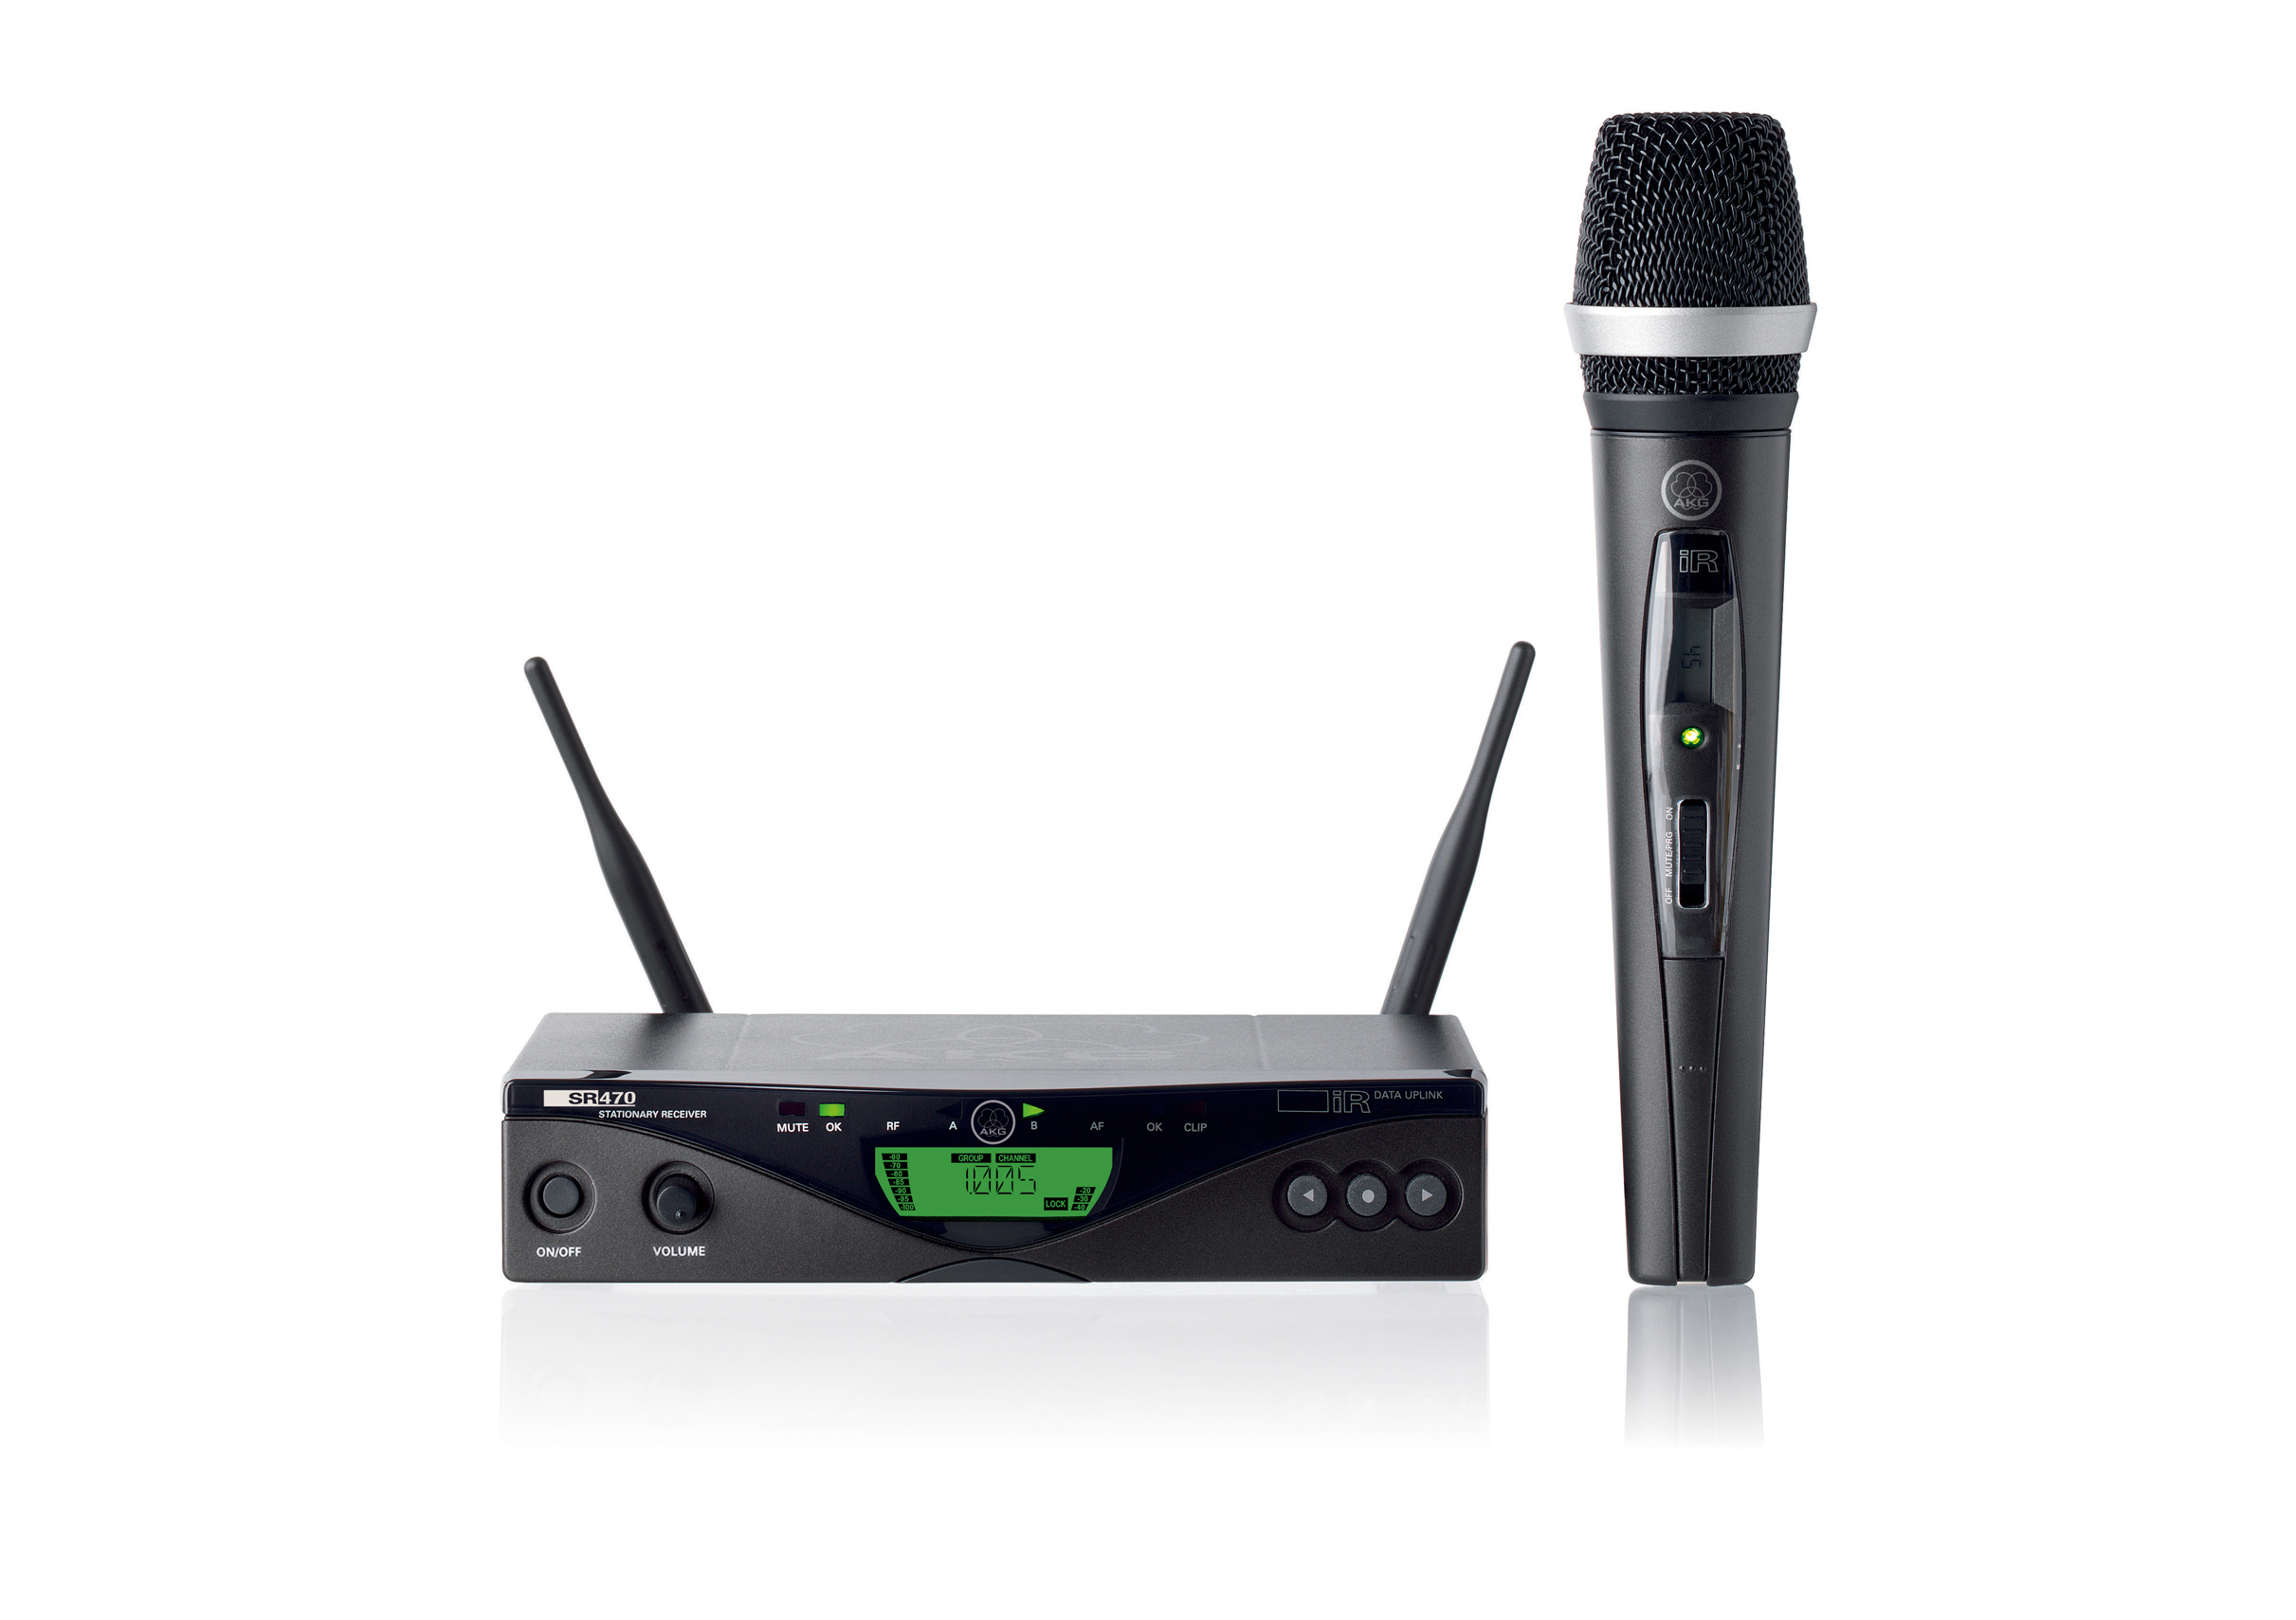 AKG WMS 470 D5 Wireless Microphone Set chính hãng, hàng cao cấp, giá cực tốt tại audio Việt Hưng